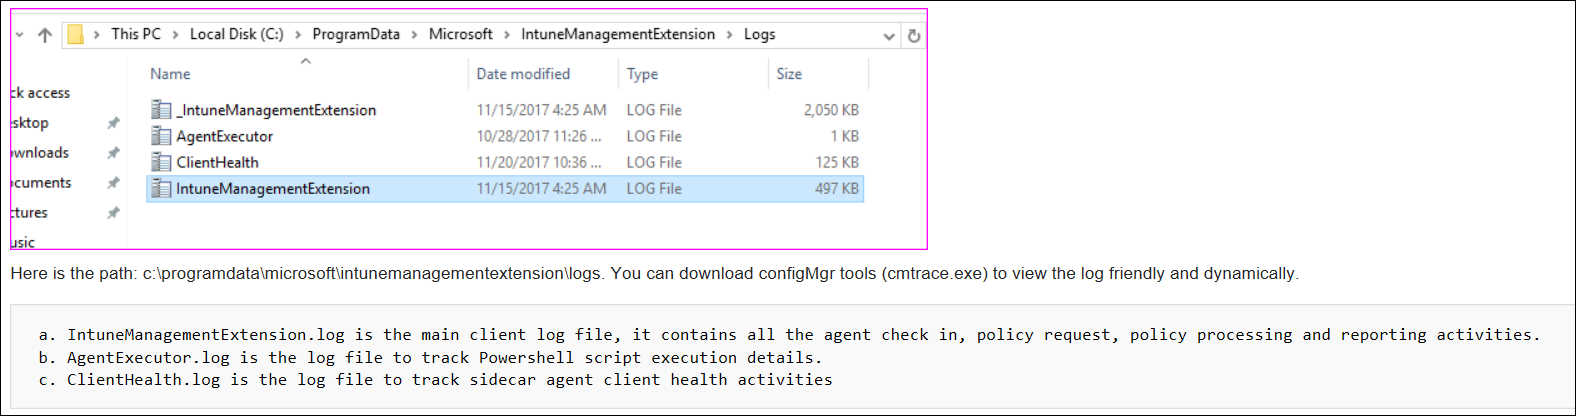 Captura de tela ou exemplo de logs do agente cmtrace no Microsoft Intune